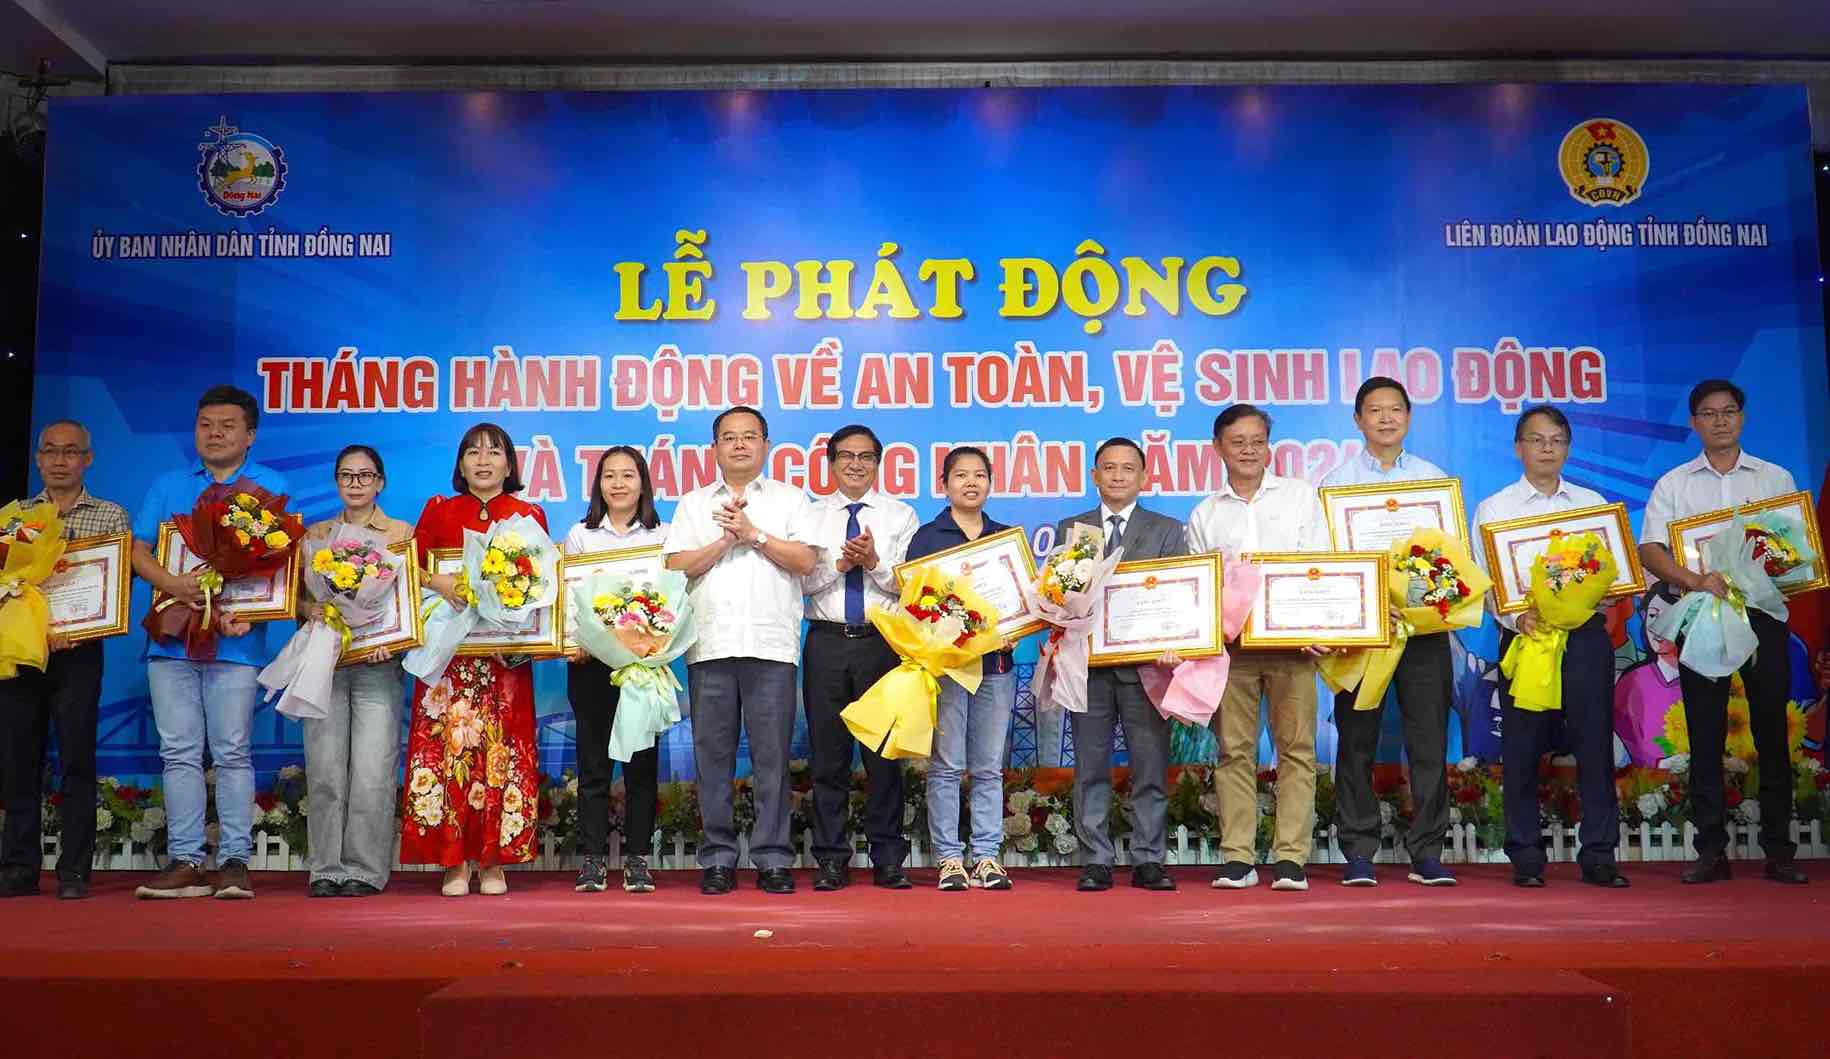 Lãnh đạo Tỉnh ủy, UBND tỉnh Đồng Nai trao bằng khen cho các tập thể, cá nhân trong công tác bảo đảm an toàn vệ sinh lao động. Ảnh: HAC